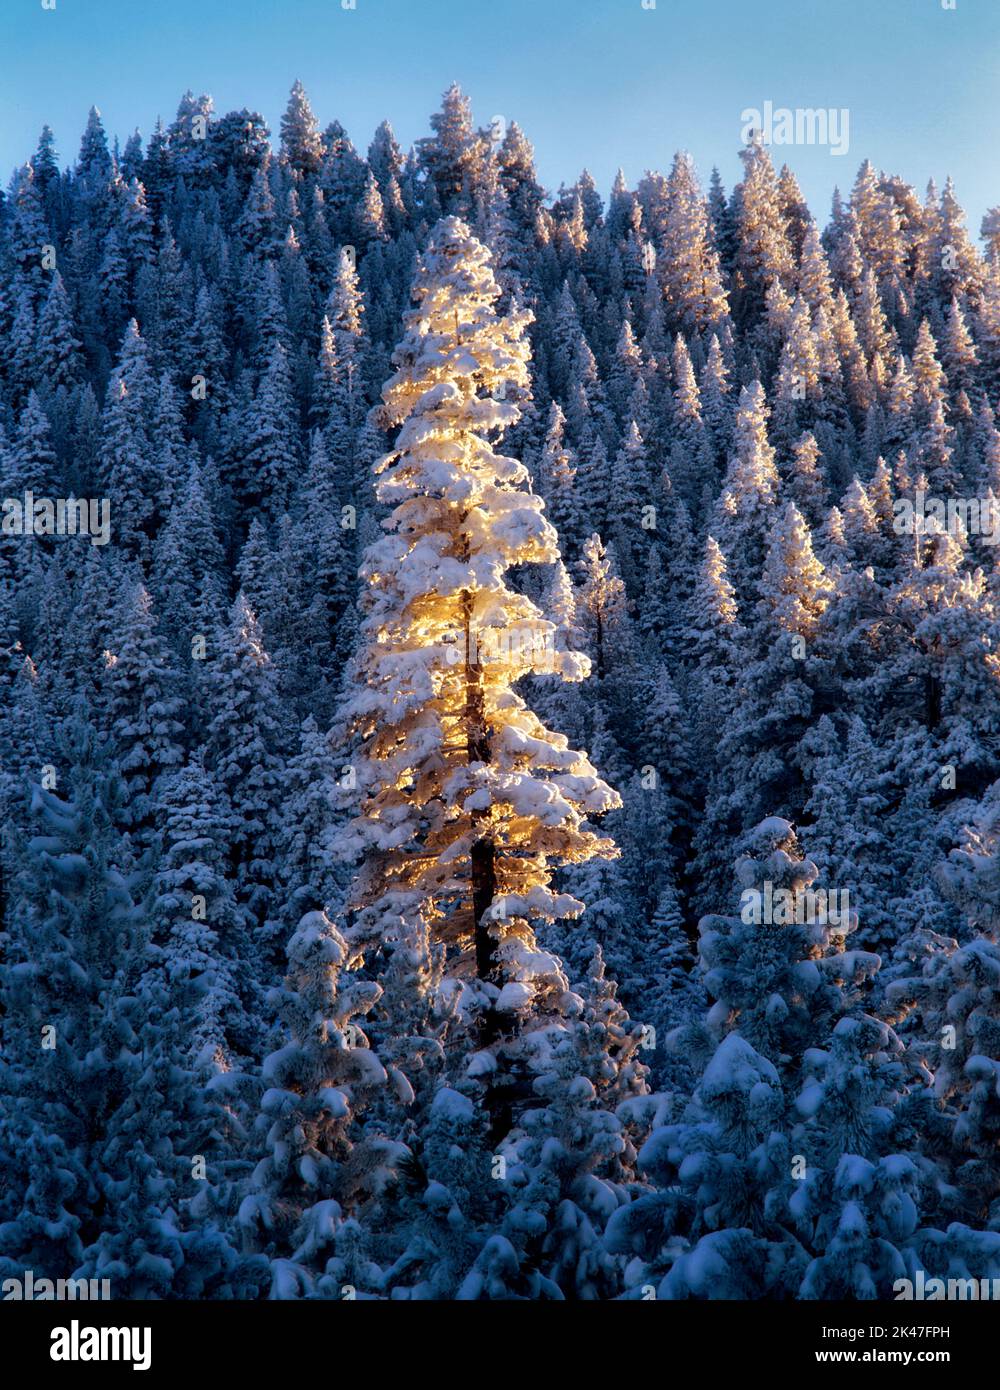 Grand arbre couvert de neige au coucher du soleil. Forêt nationale de Freemont, Oregon Banque D'Images